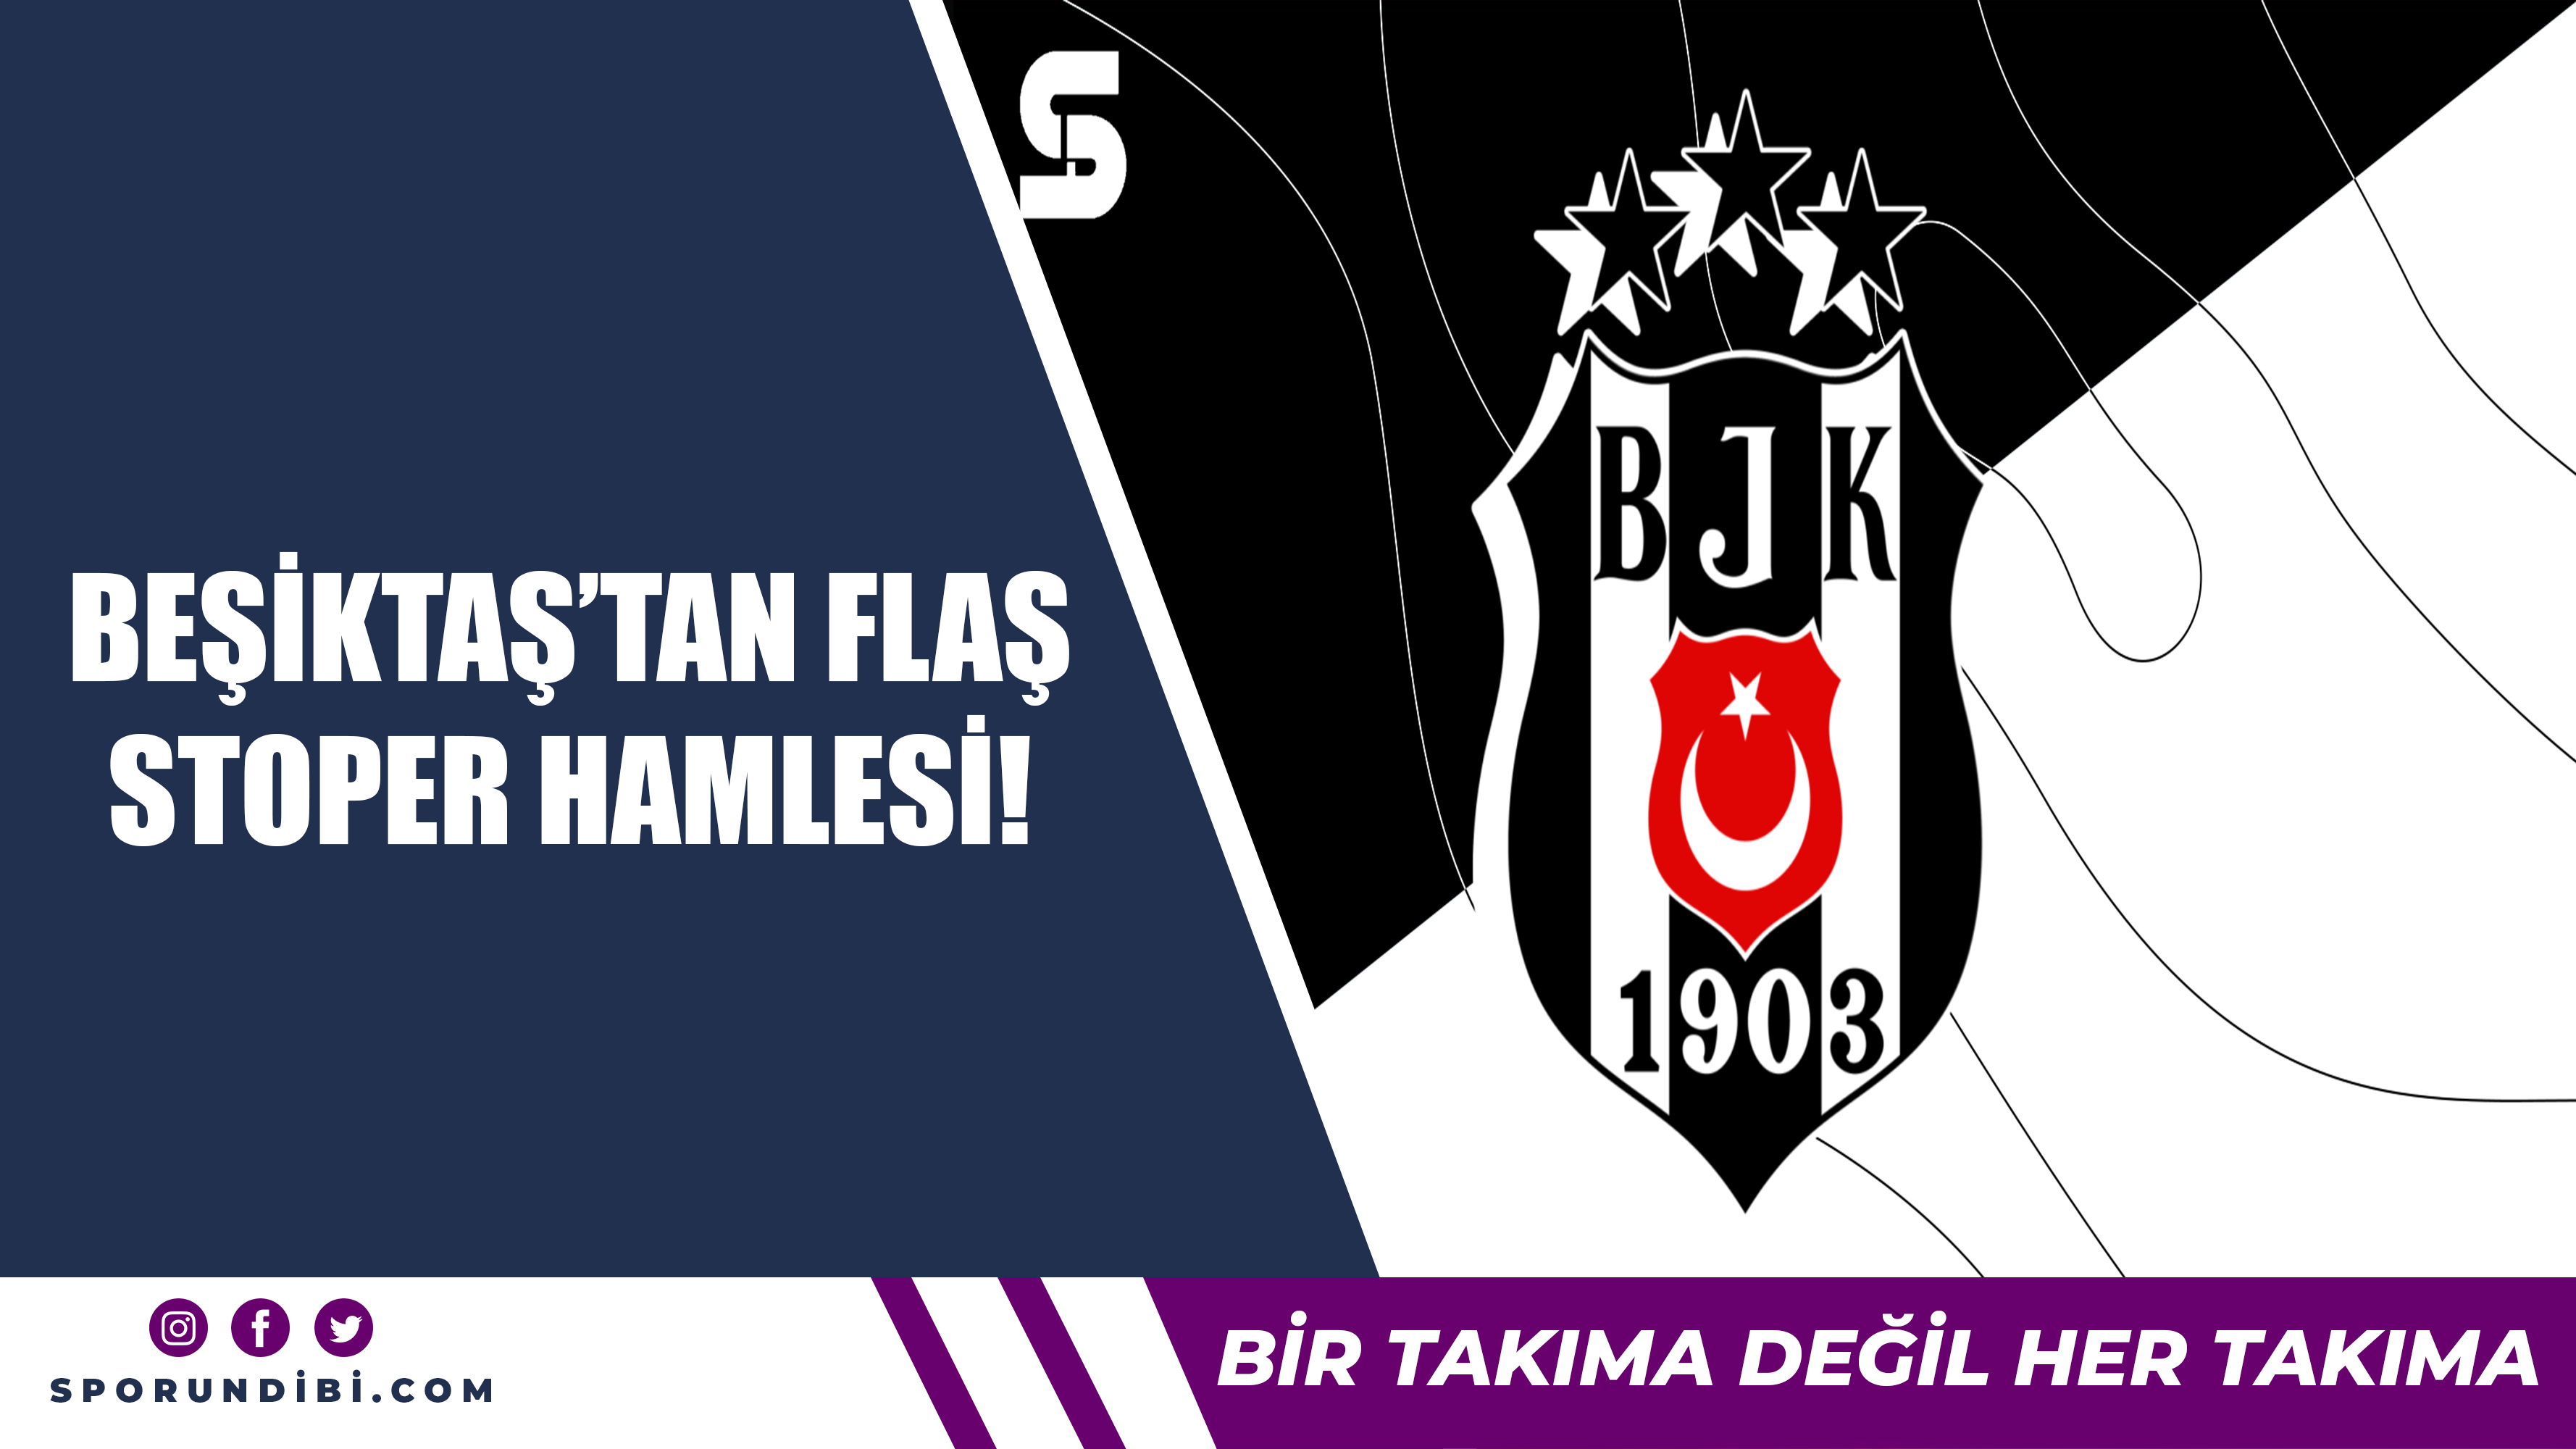 Beşiktaş'tan flaş stoper hamlesi!